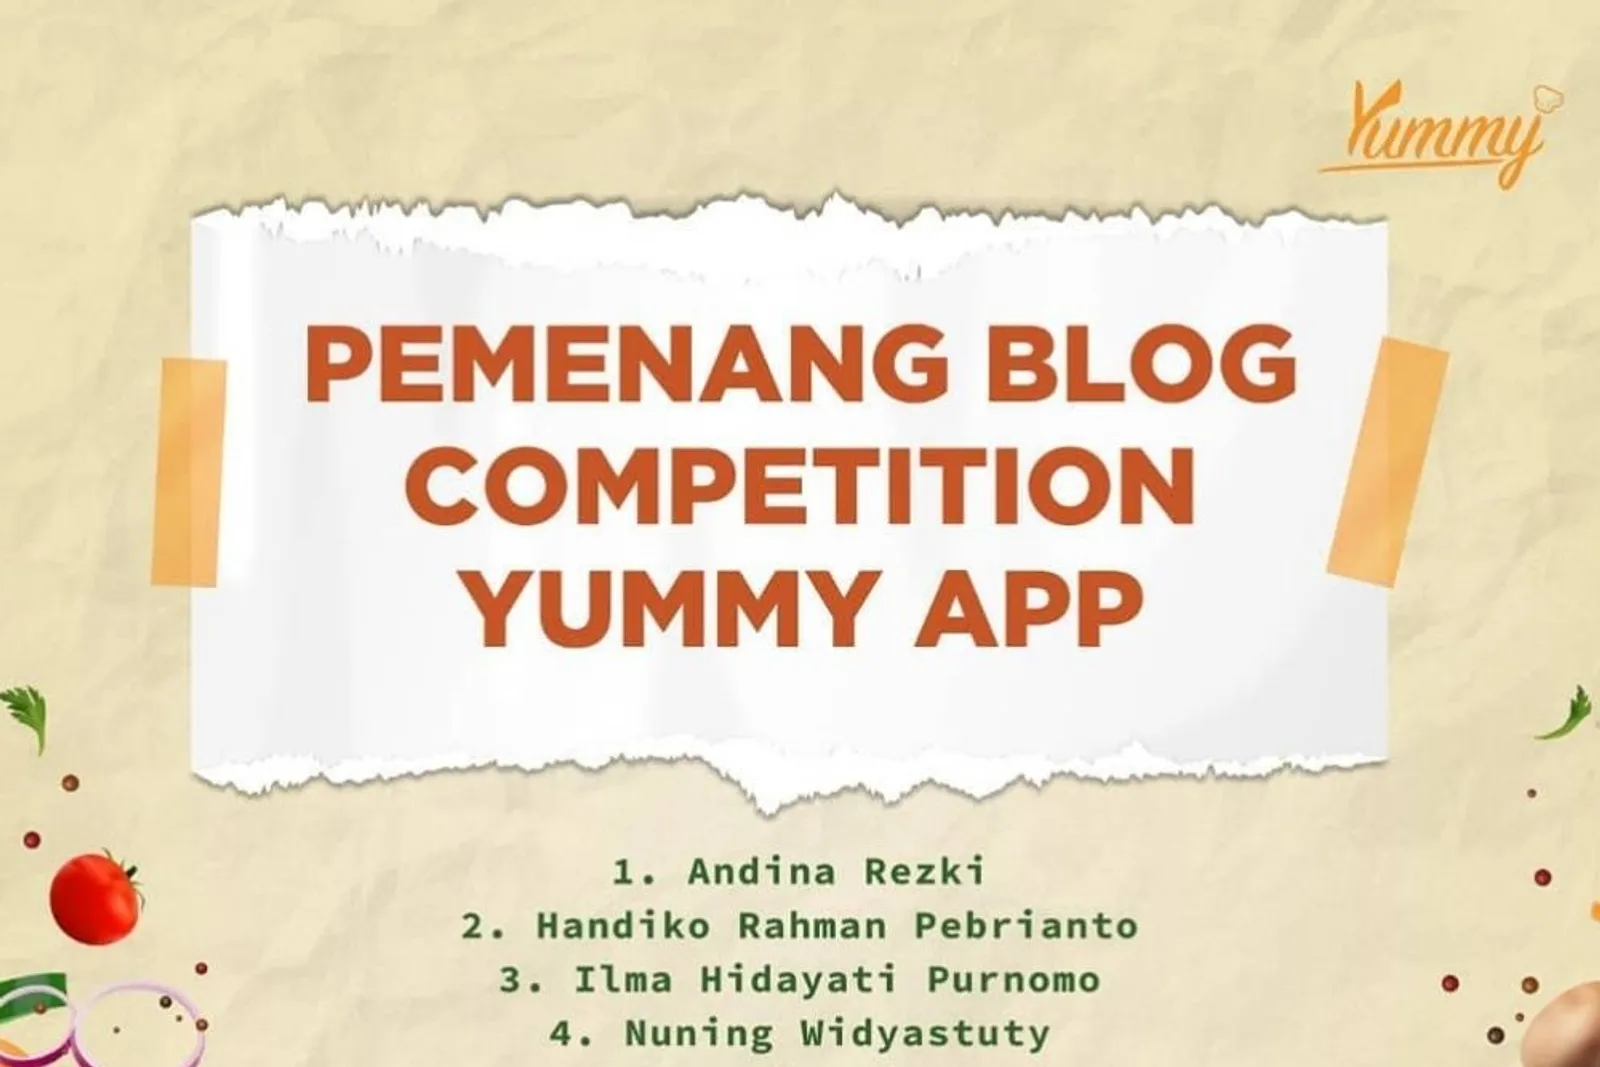 Selamat! Ini Daftar Pemenang Blog Competition Yummy App